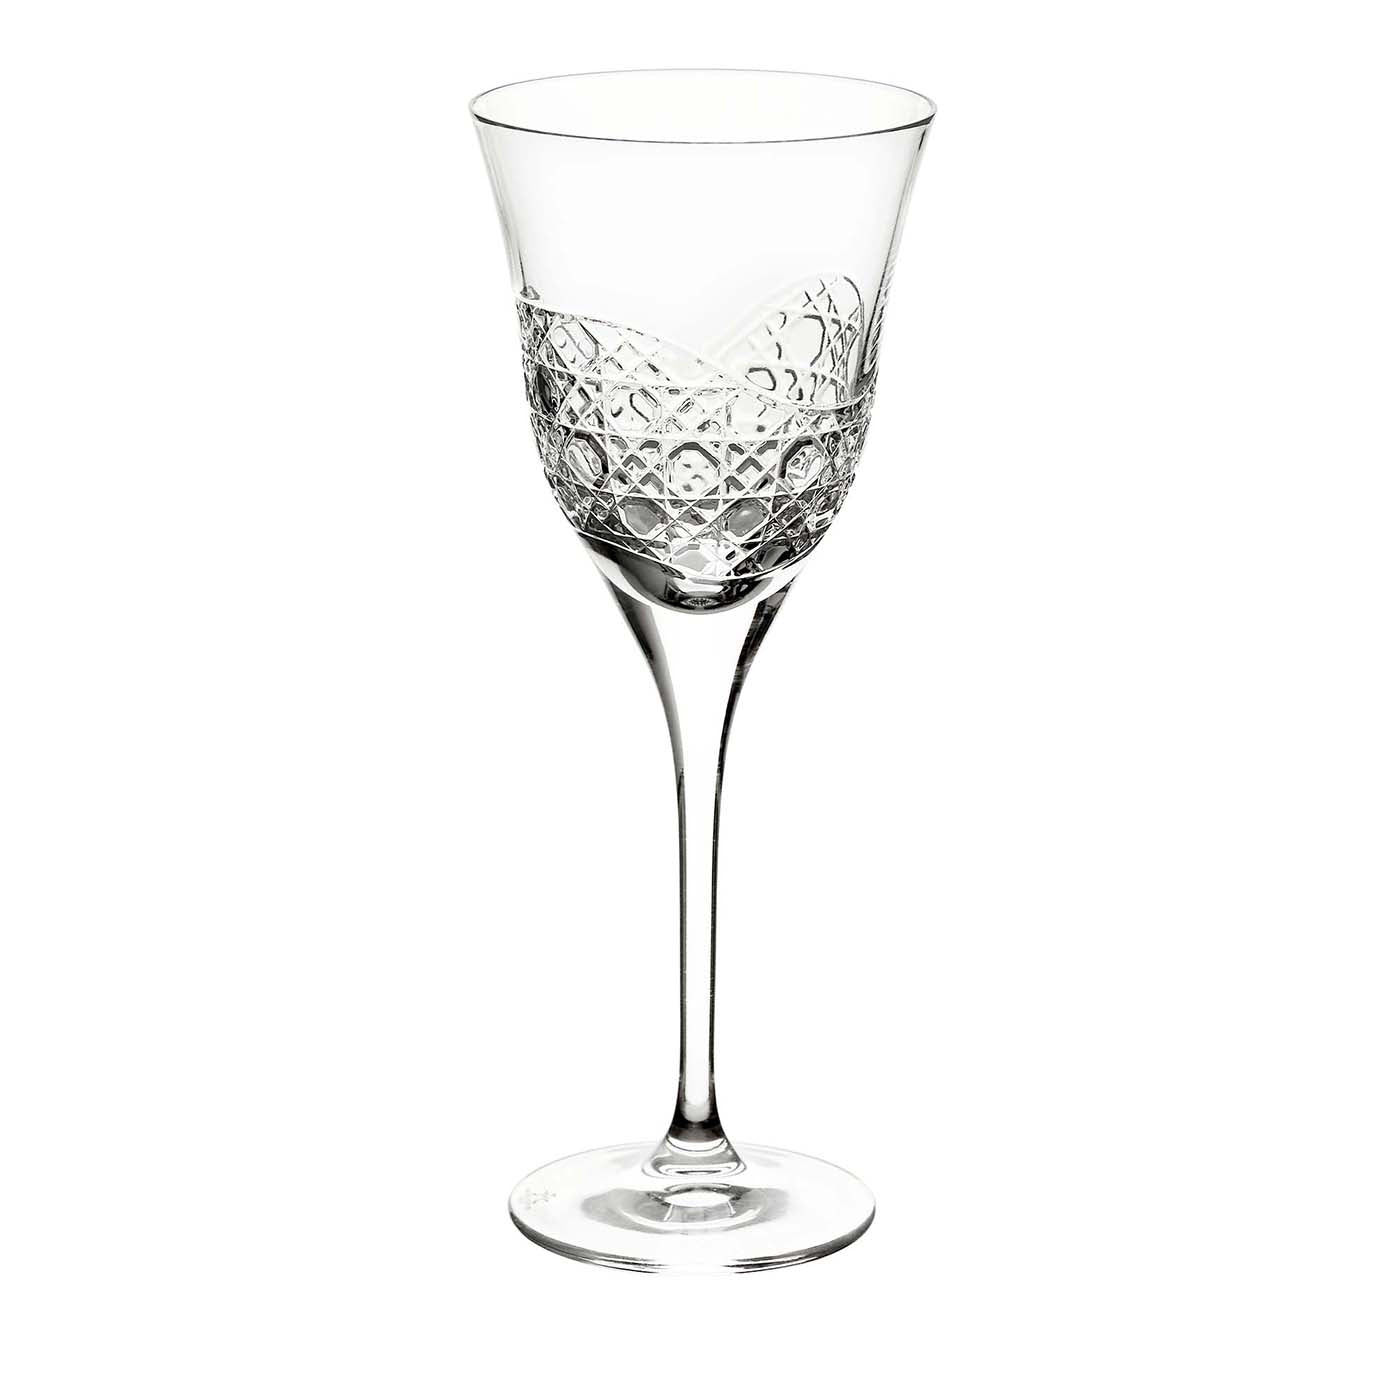 Meta'morphosis Set of 6 Wine Glasses - Main view